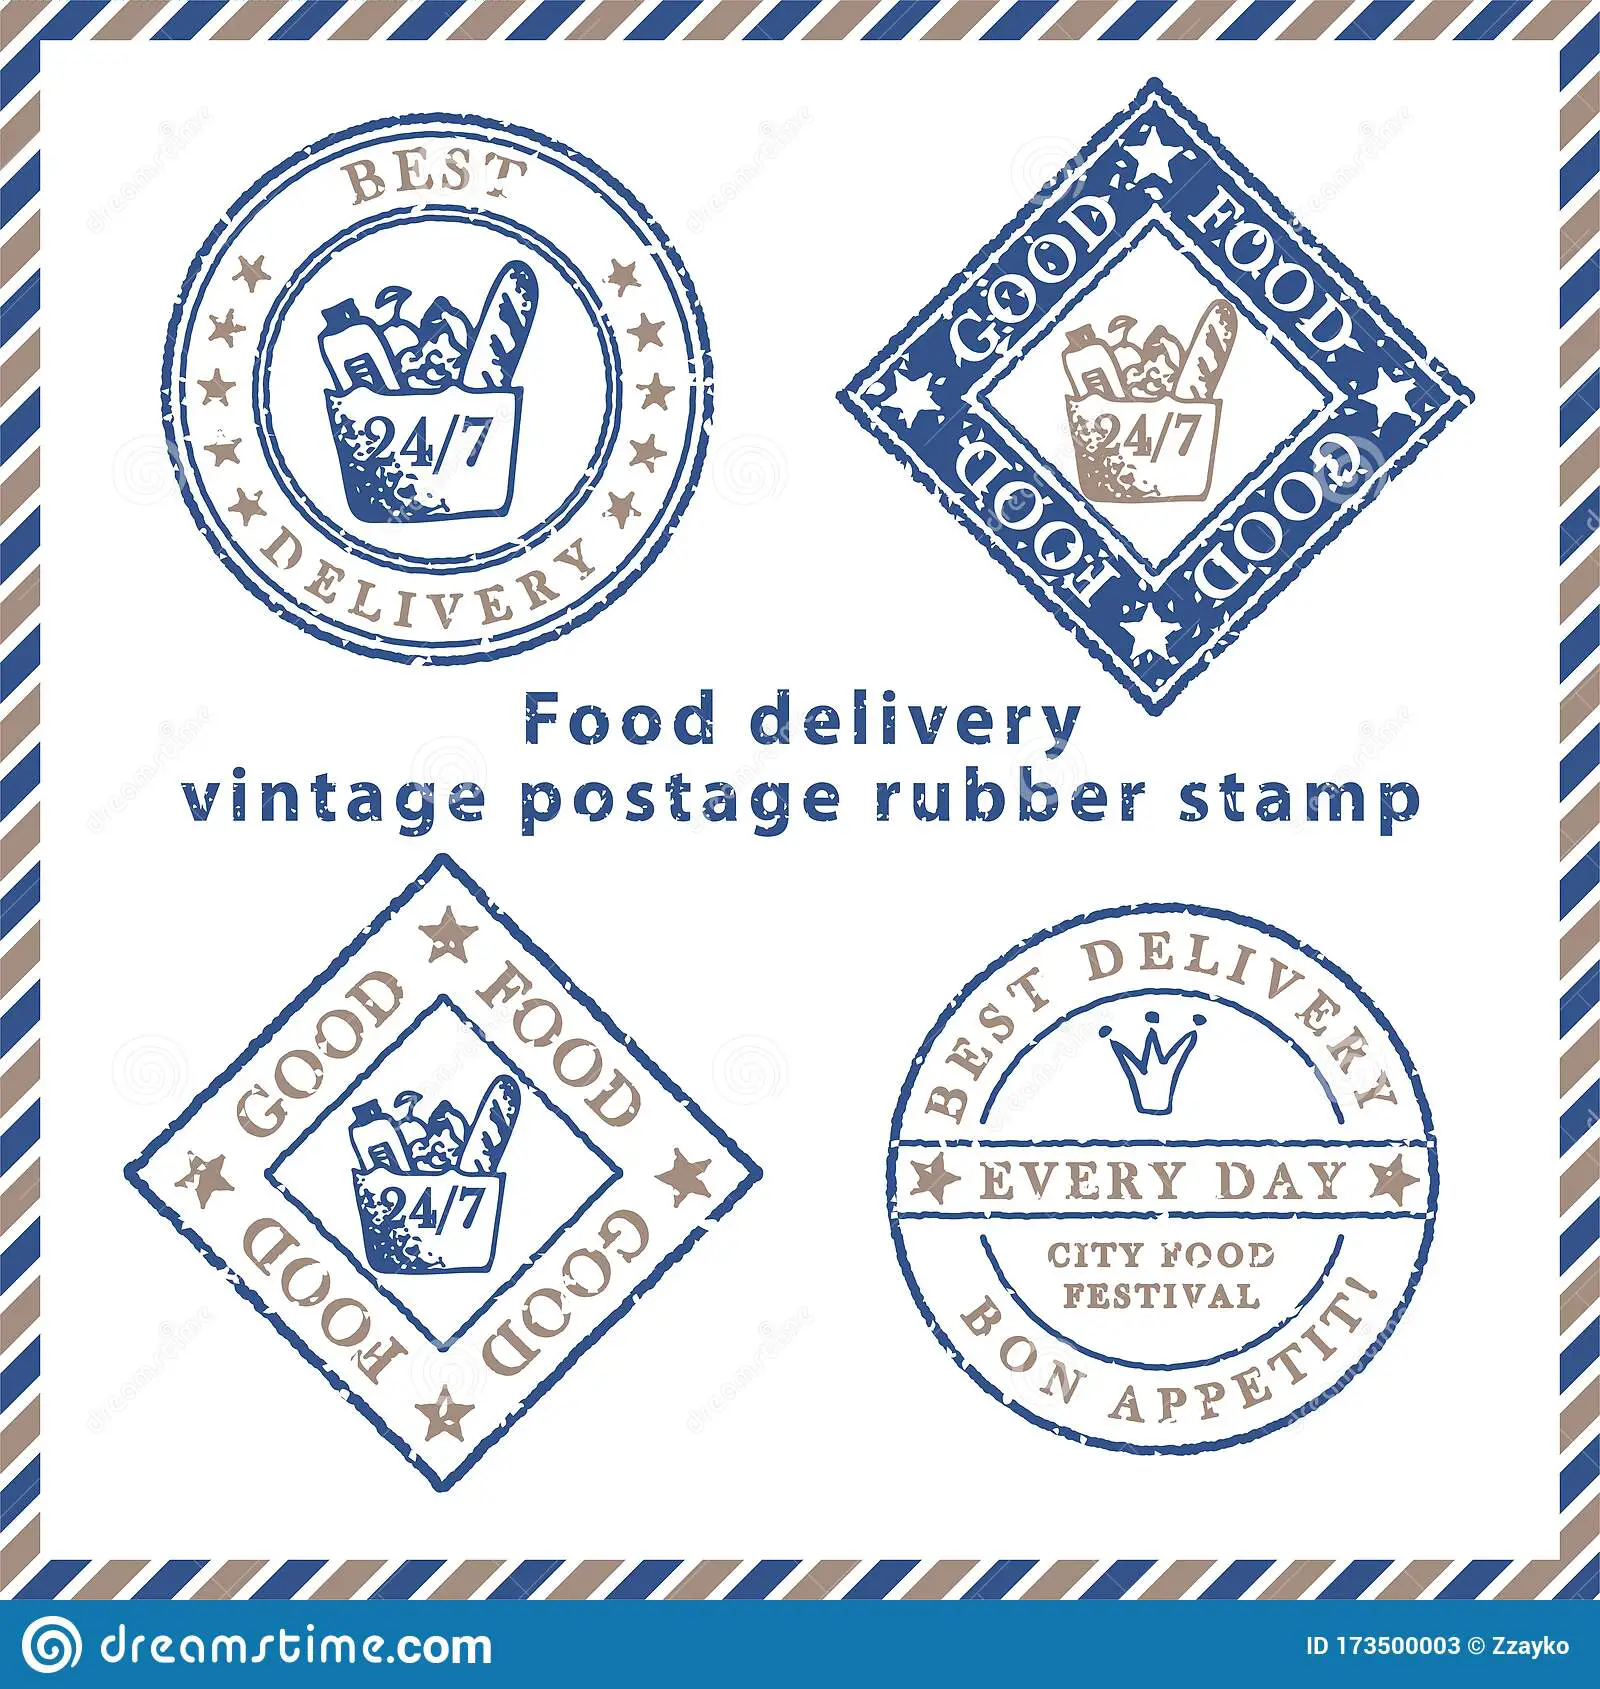 Food Delivery For Food Stamps - FoodStampsTalk.com